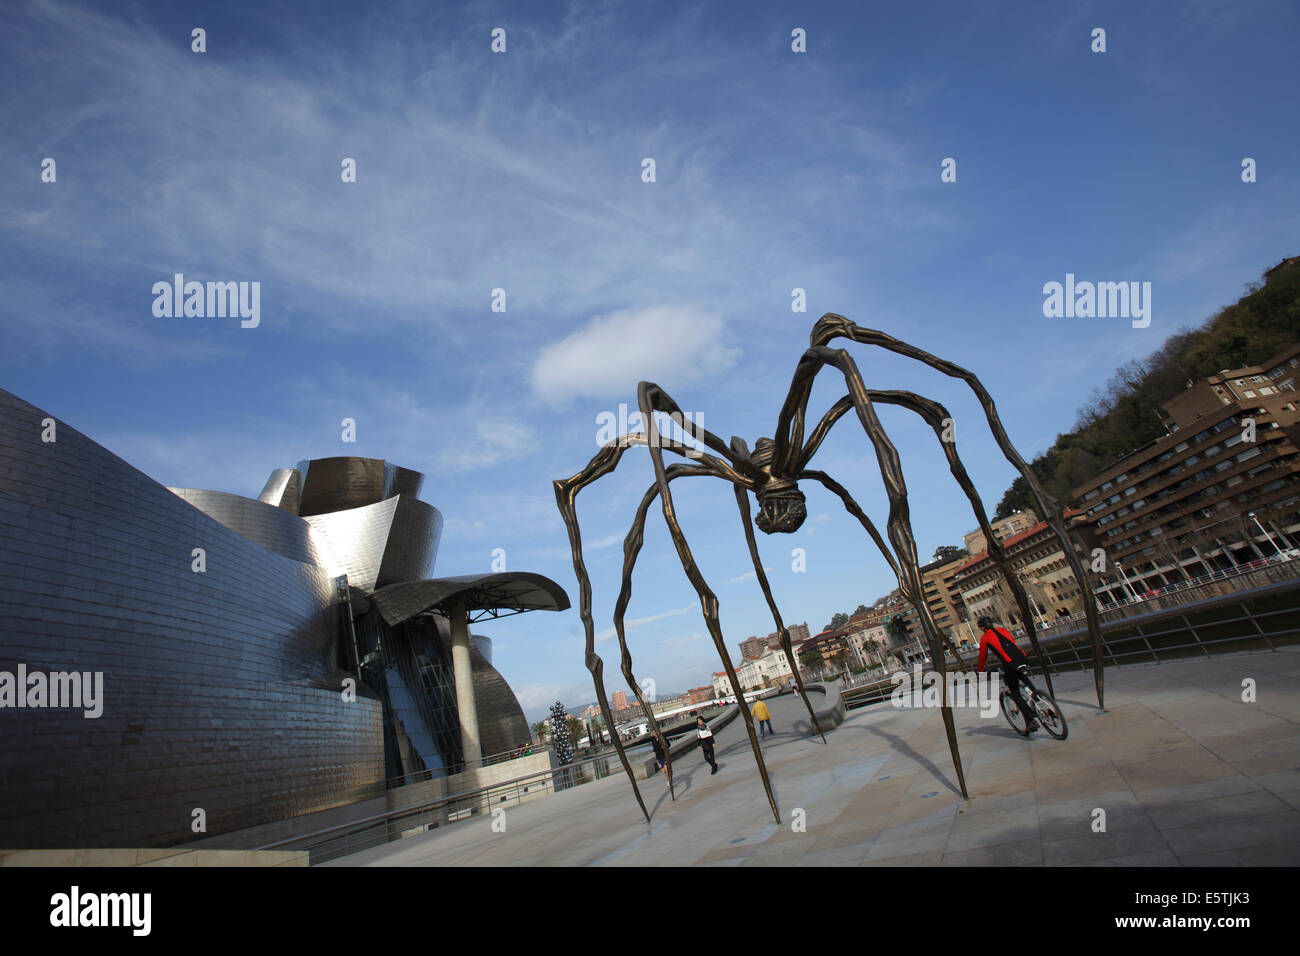 La sculpture Maman par Louis Bourgeois au Musée Guggenheim d'Art Contemporain, Bilbao, Espagne Banque D'Images